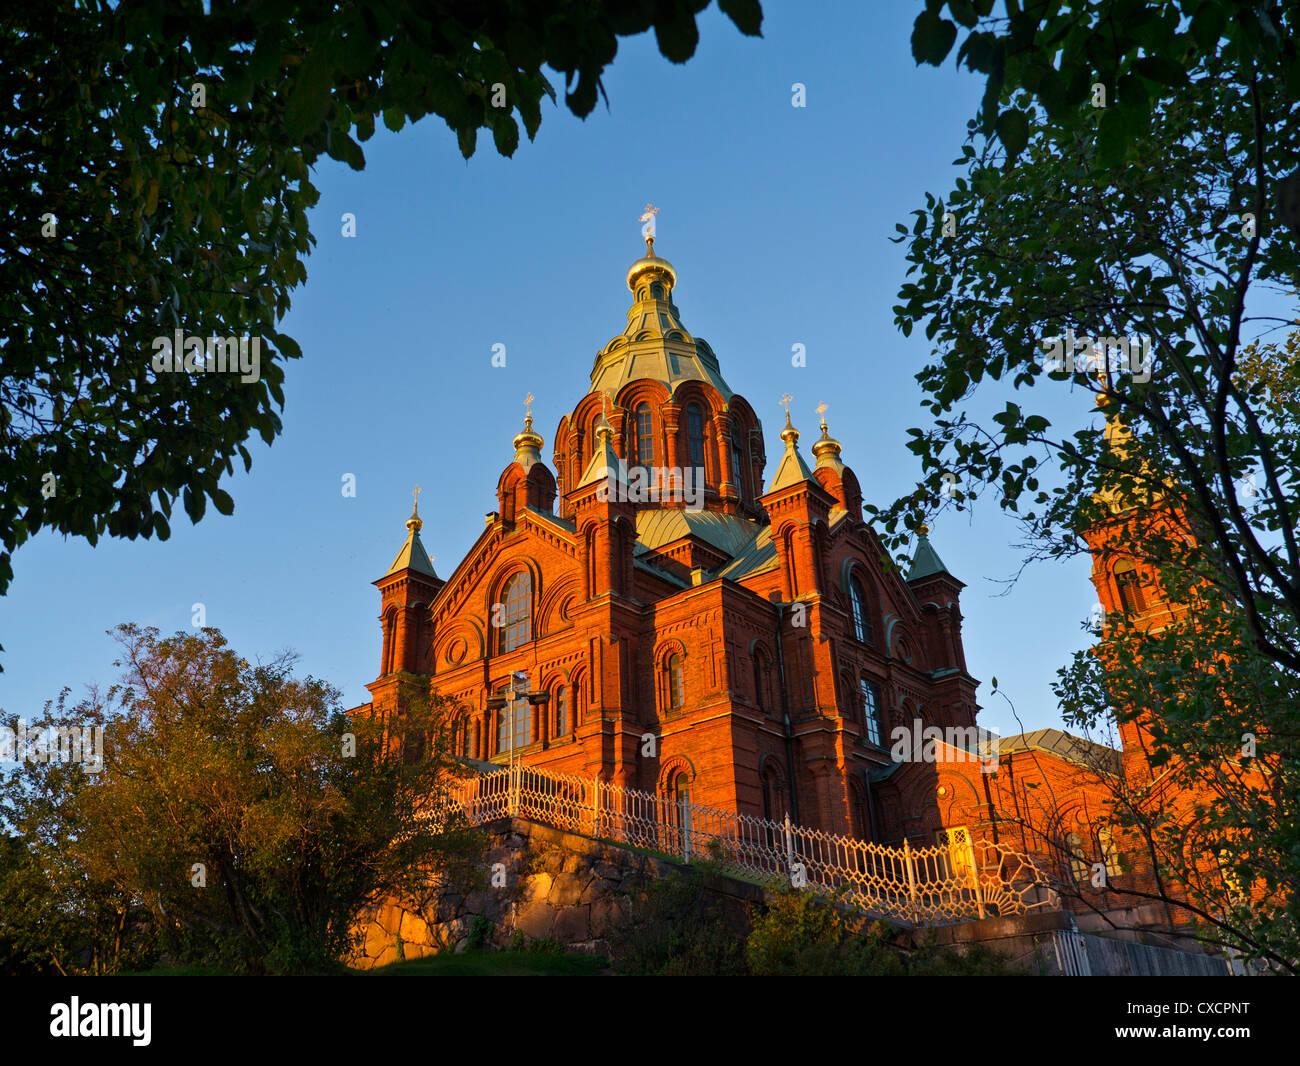 Cathédrale Uspenski cathédrale de l'Église russe () une cathédrale orthodoxe de l'Est donnant sur le port d'Helsinki, Finlande. Banque D'Images